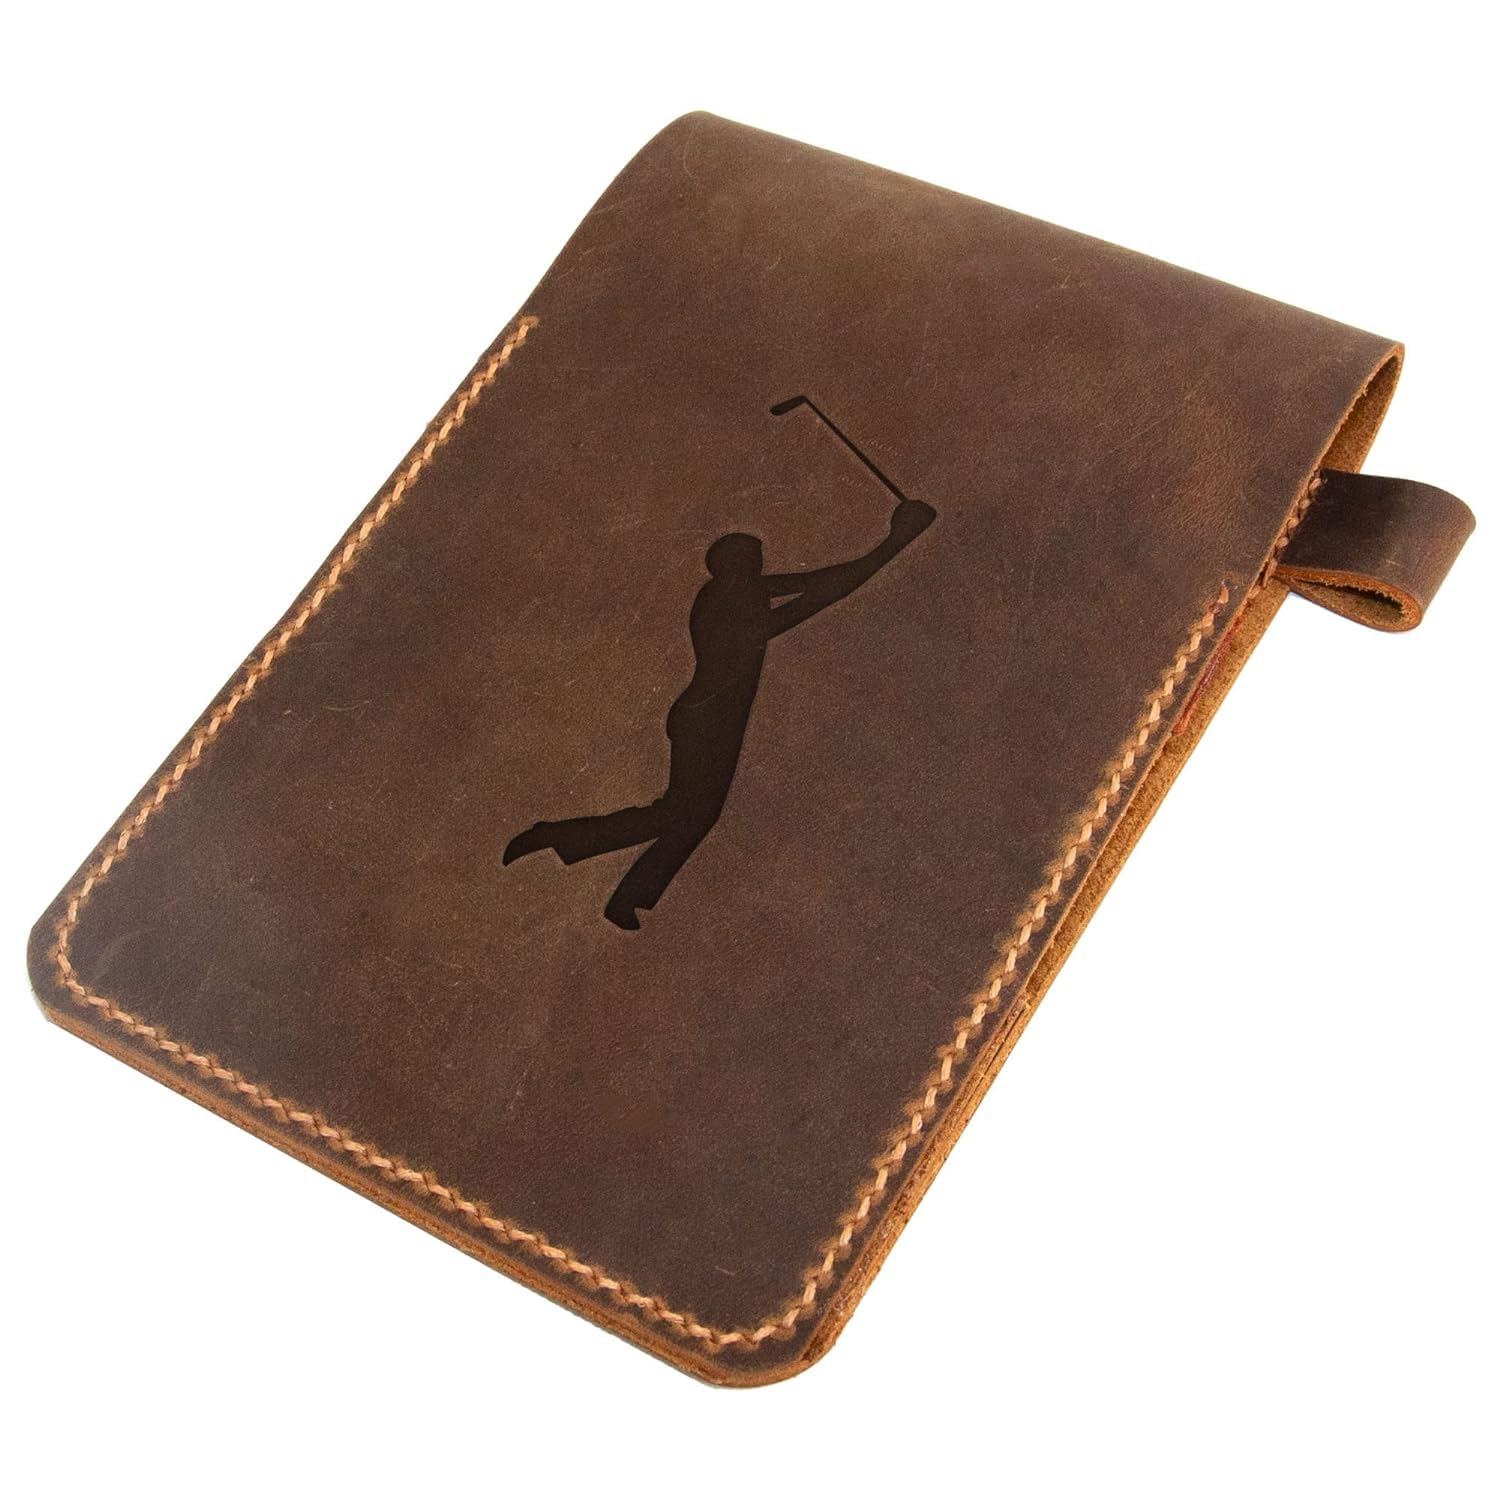 Turbosnail Personalized Golf Scorecard Holder Leather Hand Stitched, Yardage Book Holder, Golfers Gift, Gift for Him, Gift for Dad, Leather Golf Gifts